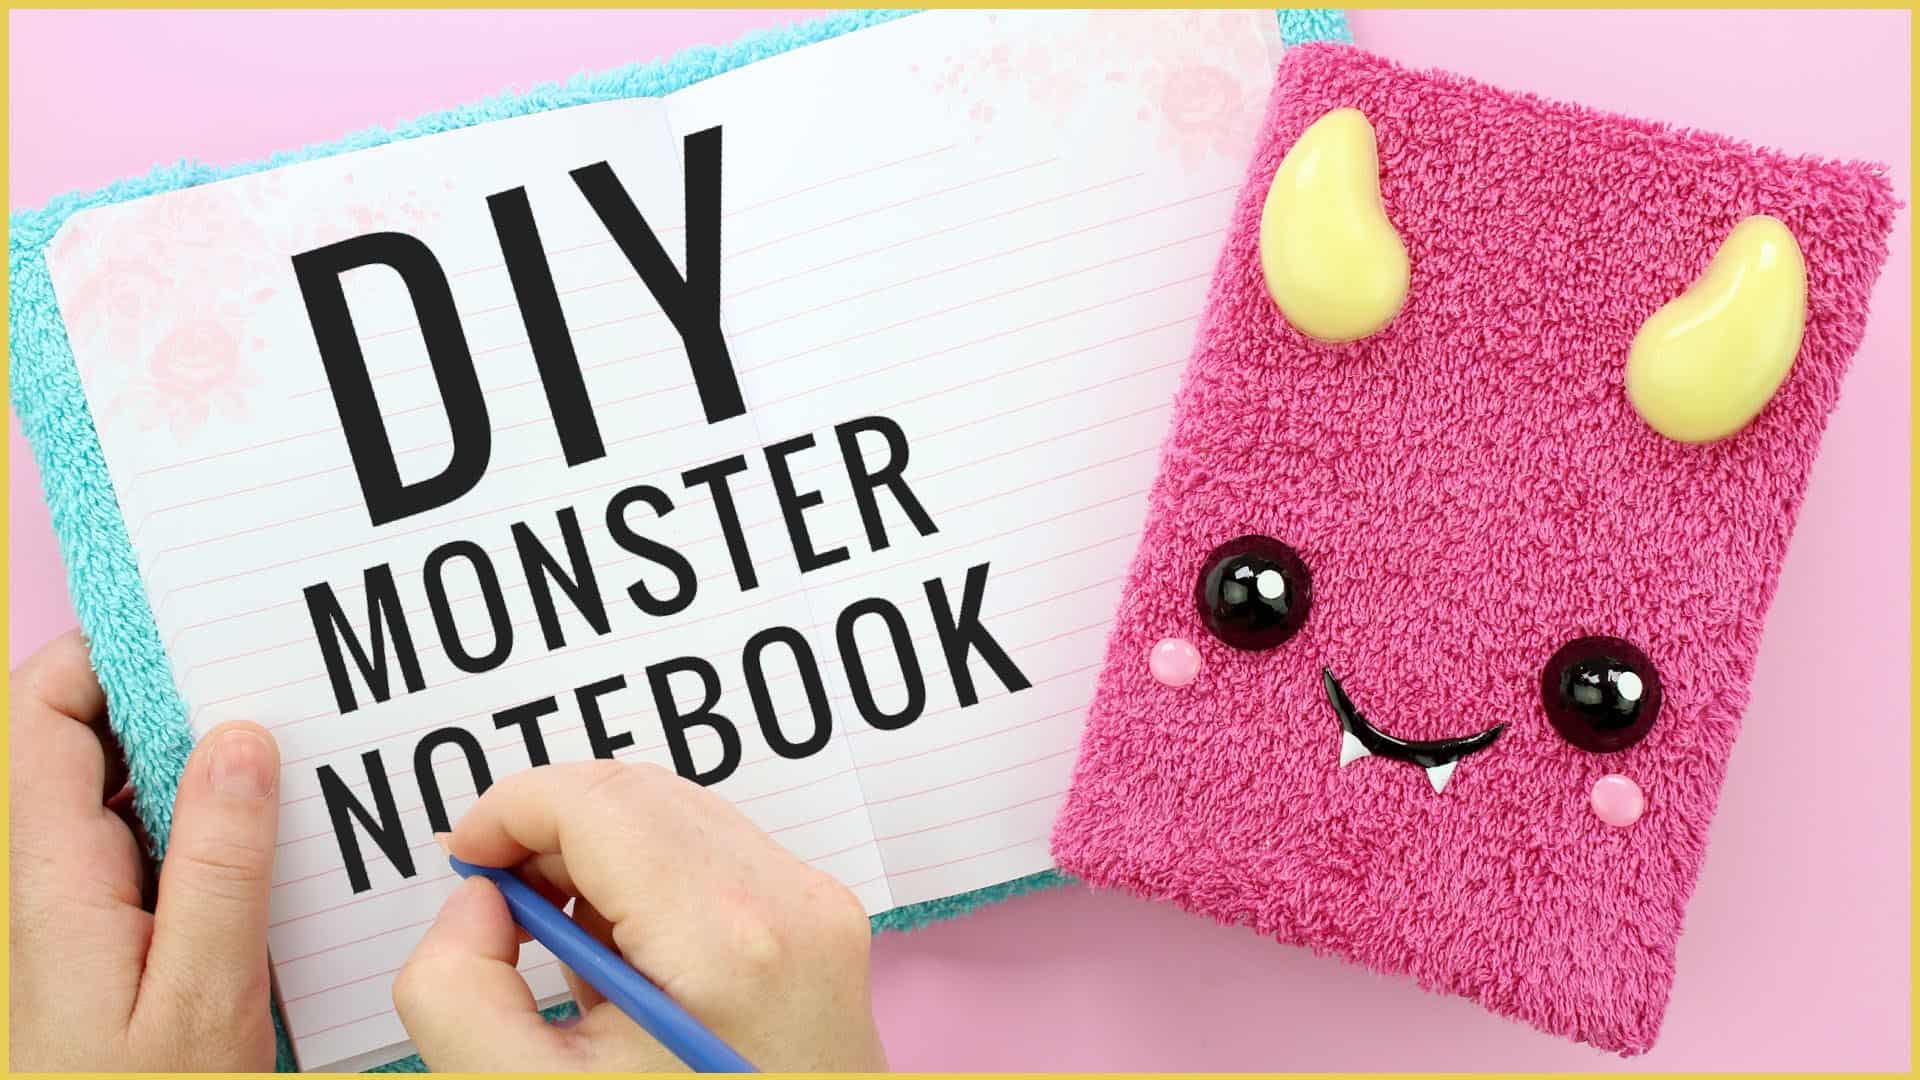 DIY monster notebooks